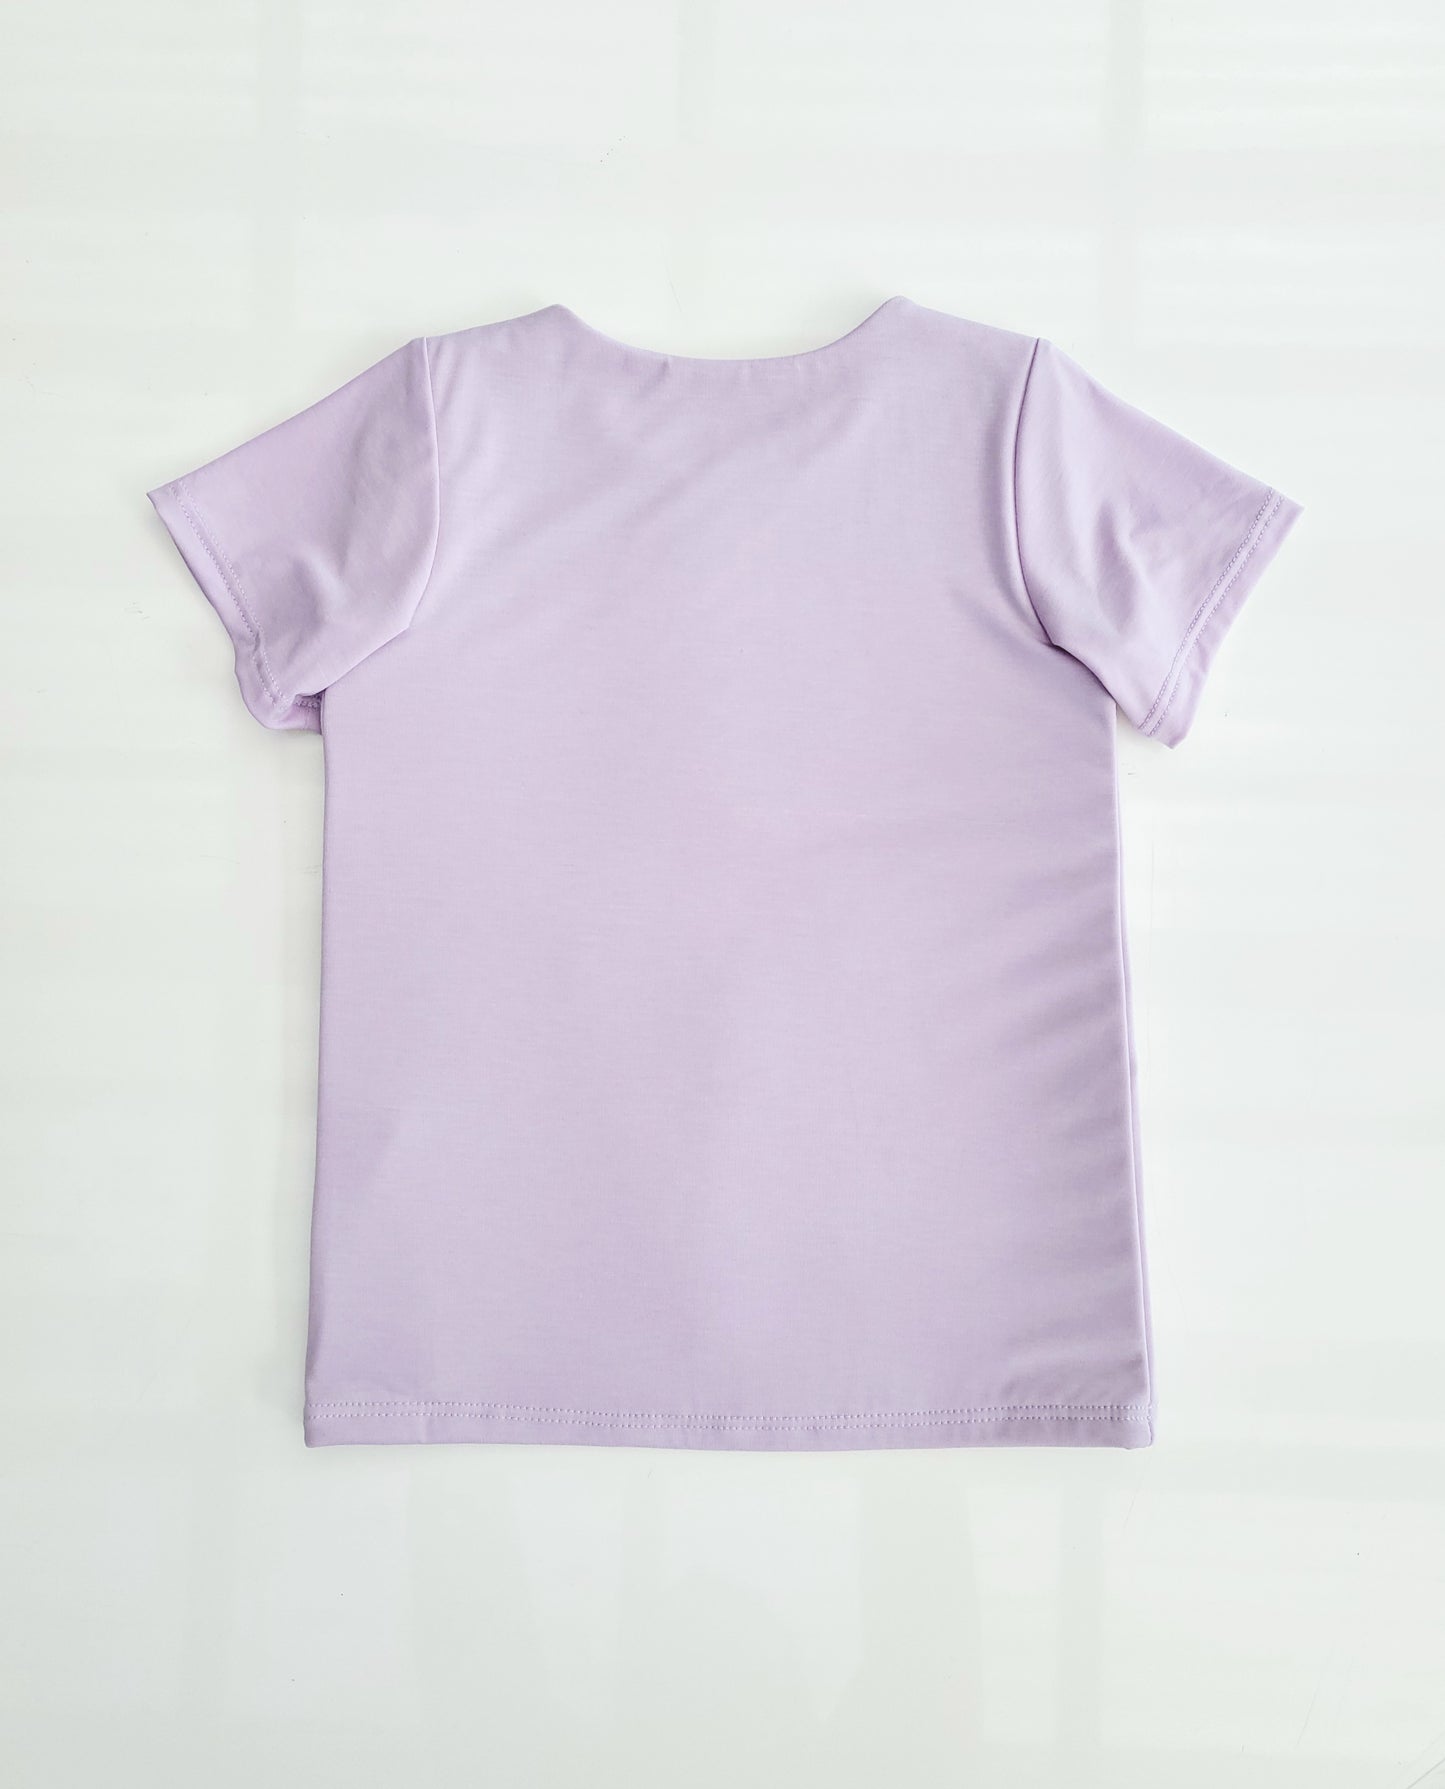 Eve Fleur - EMF Shielding Kids Tee Shirt - Lilac - Schild